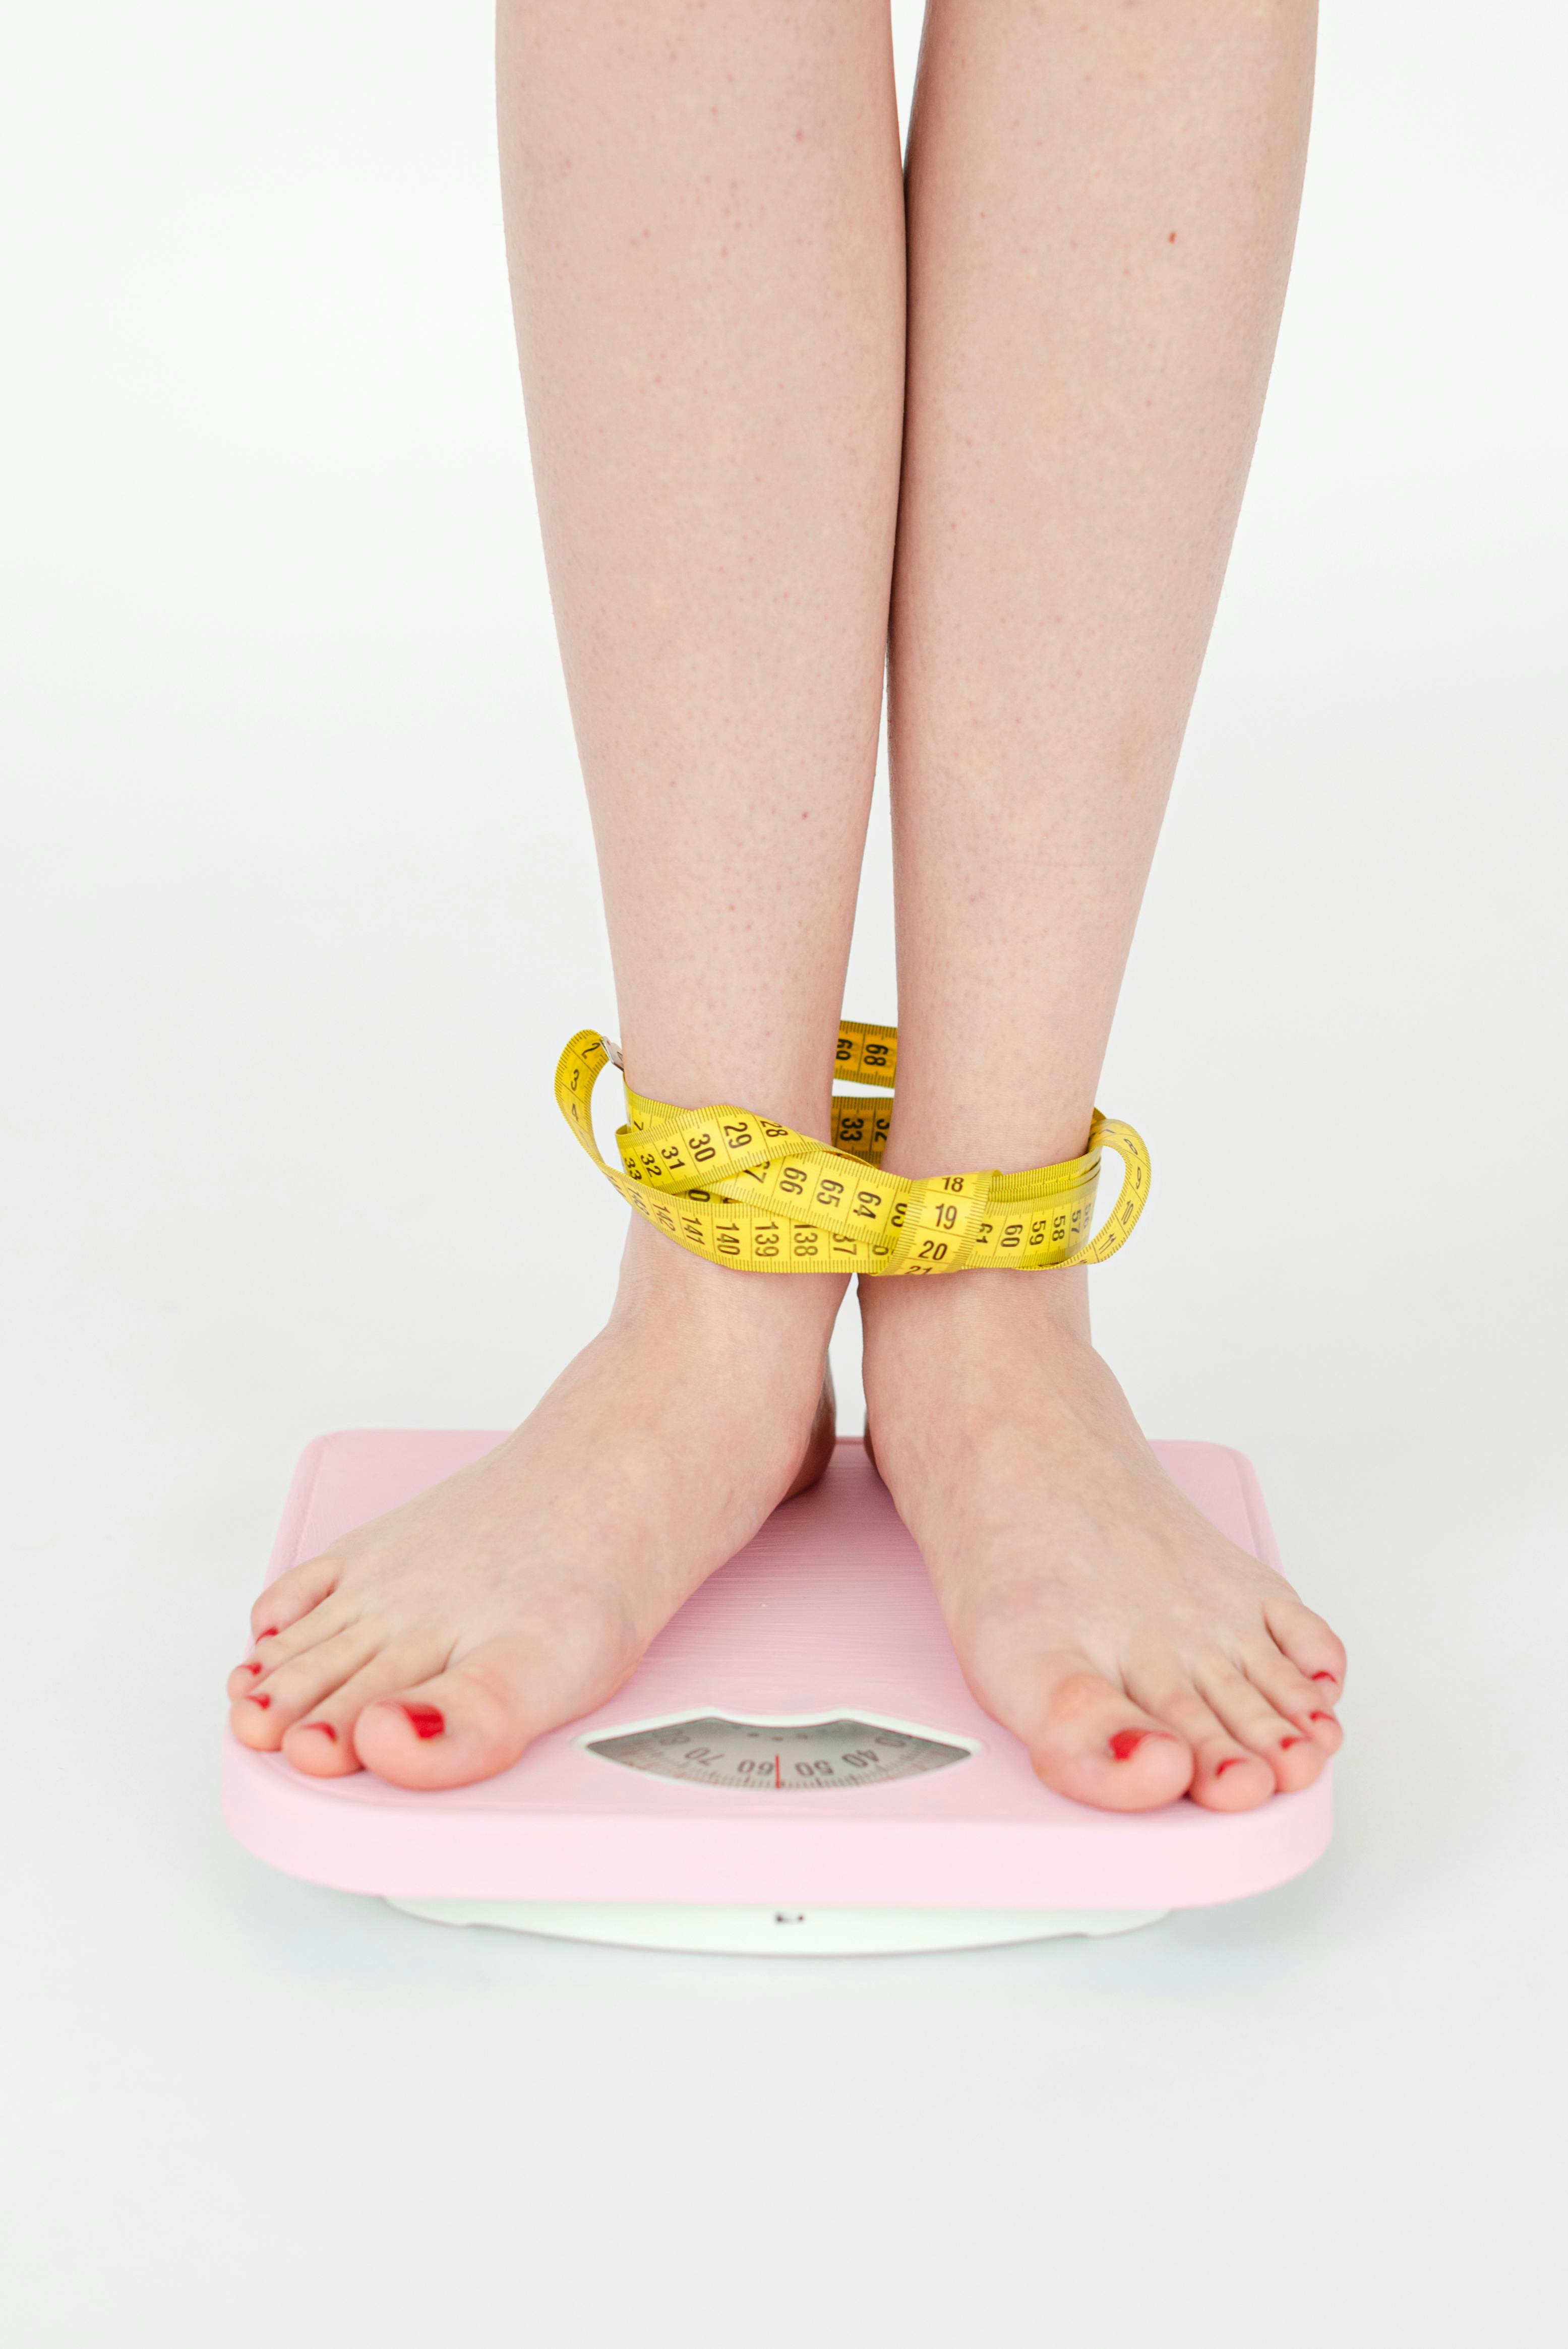 Mujeres: ¿Qué tienen que ver las hormonas con la pérdida de peso?